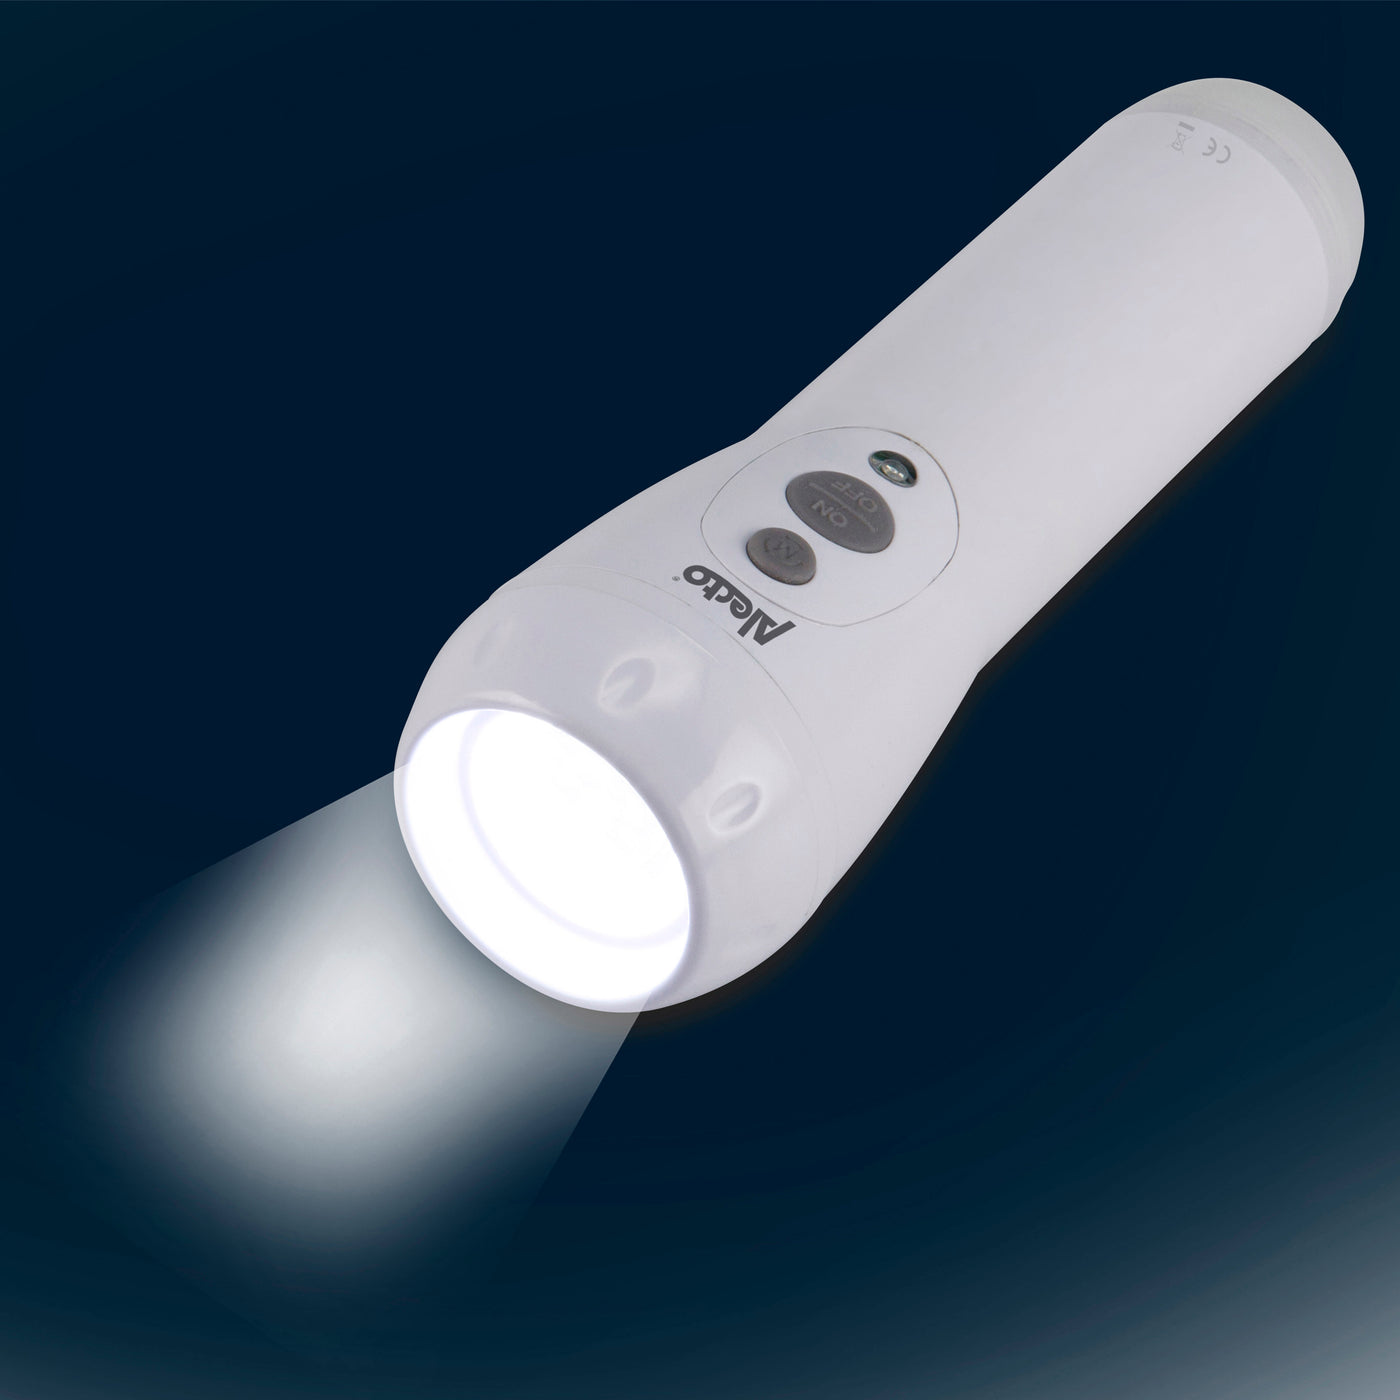 Alecto ATL-110 - Oplaadbare LED zaklamp / automatisch LED nachtlampje, wit